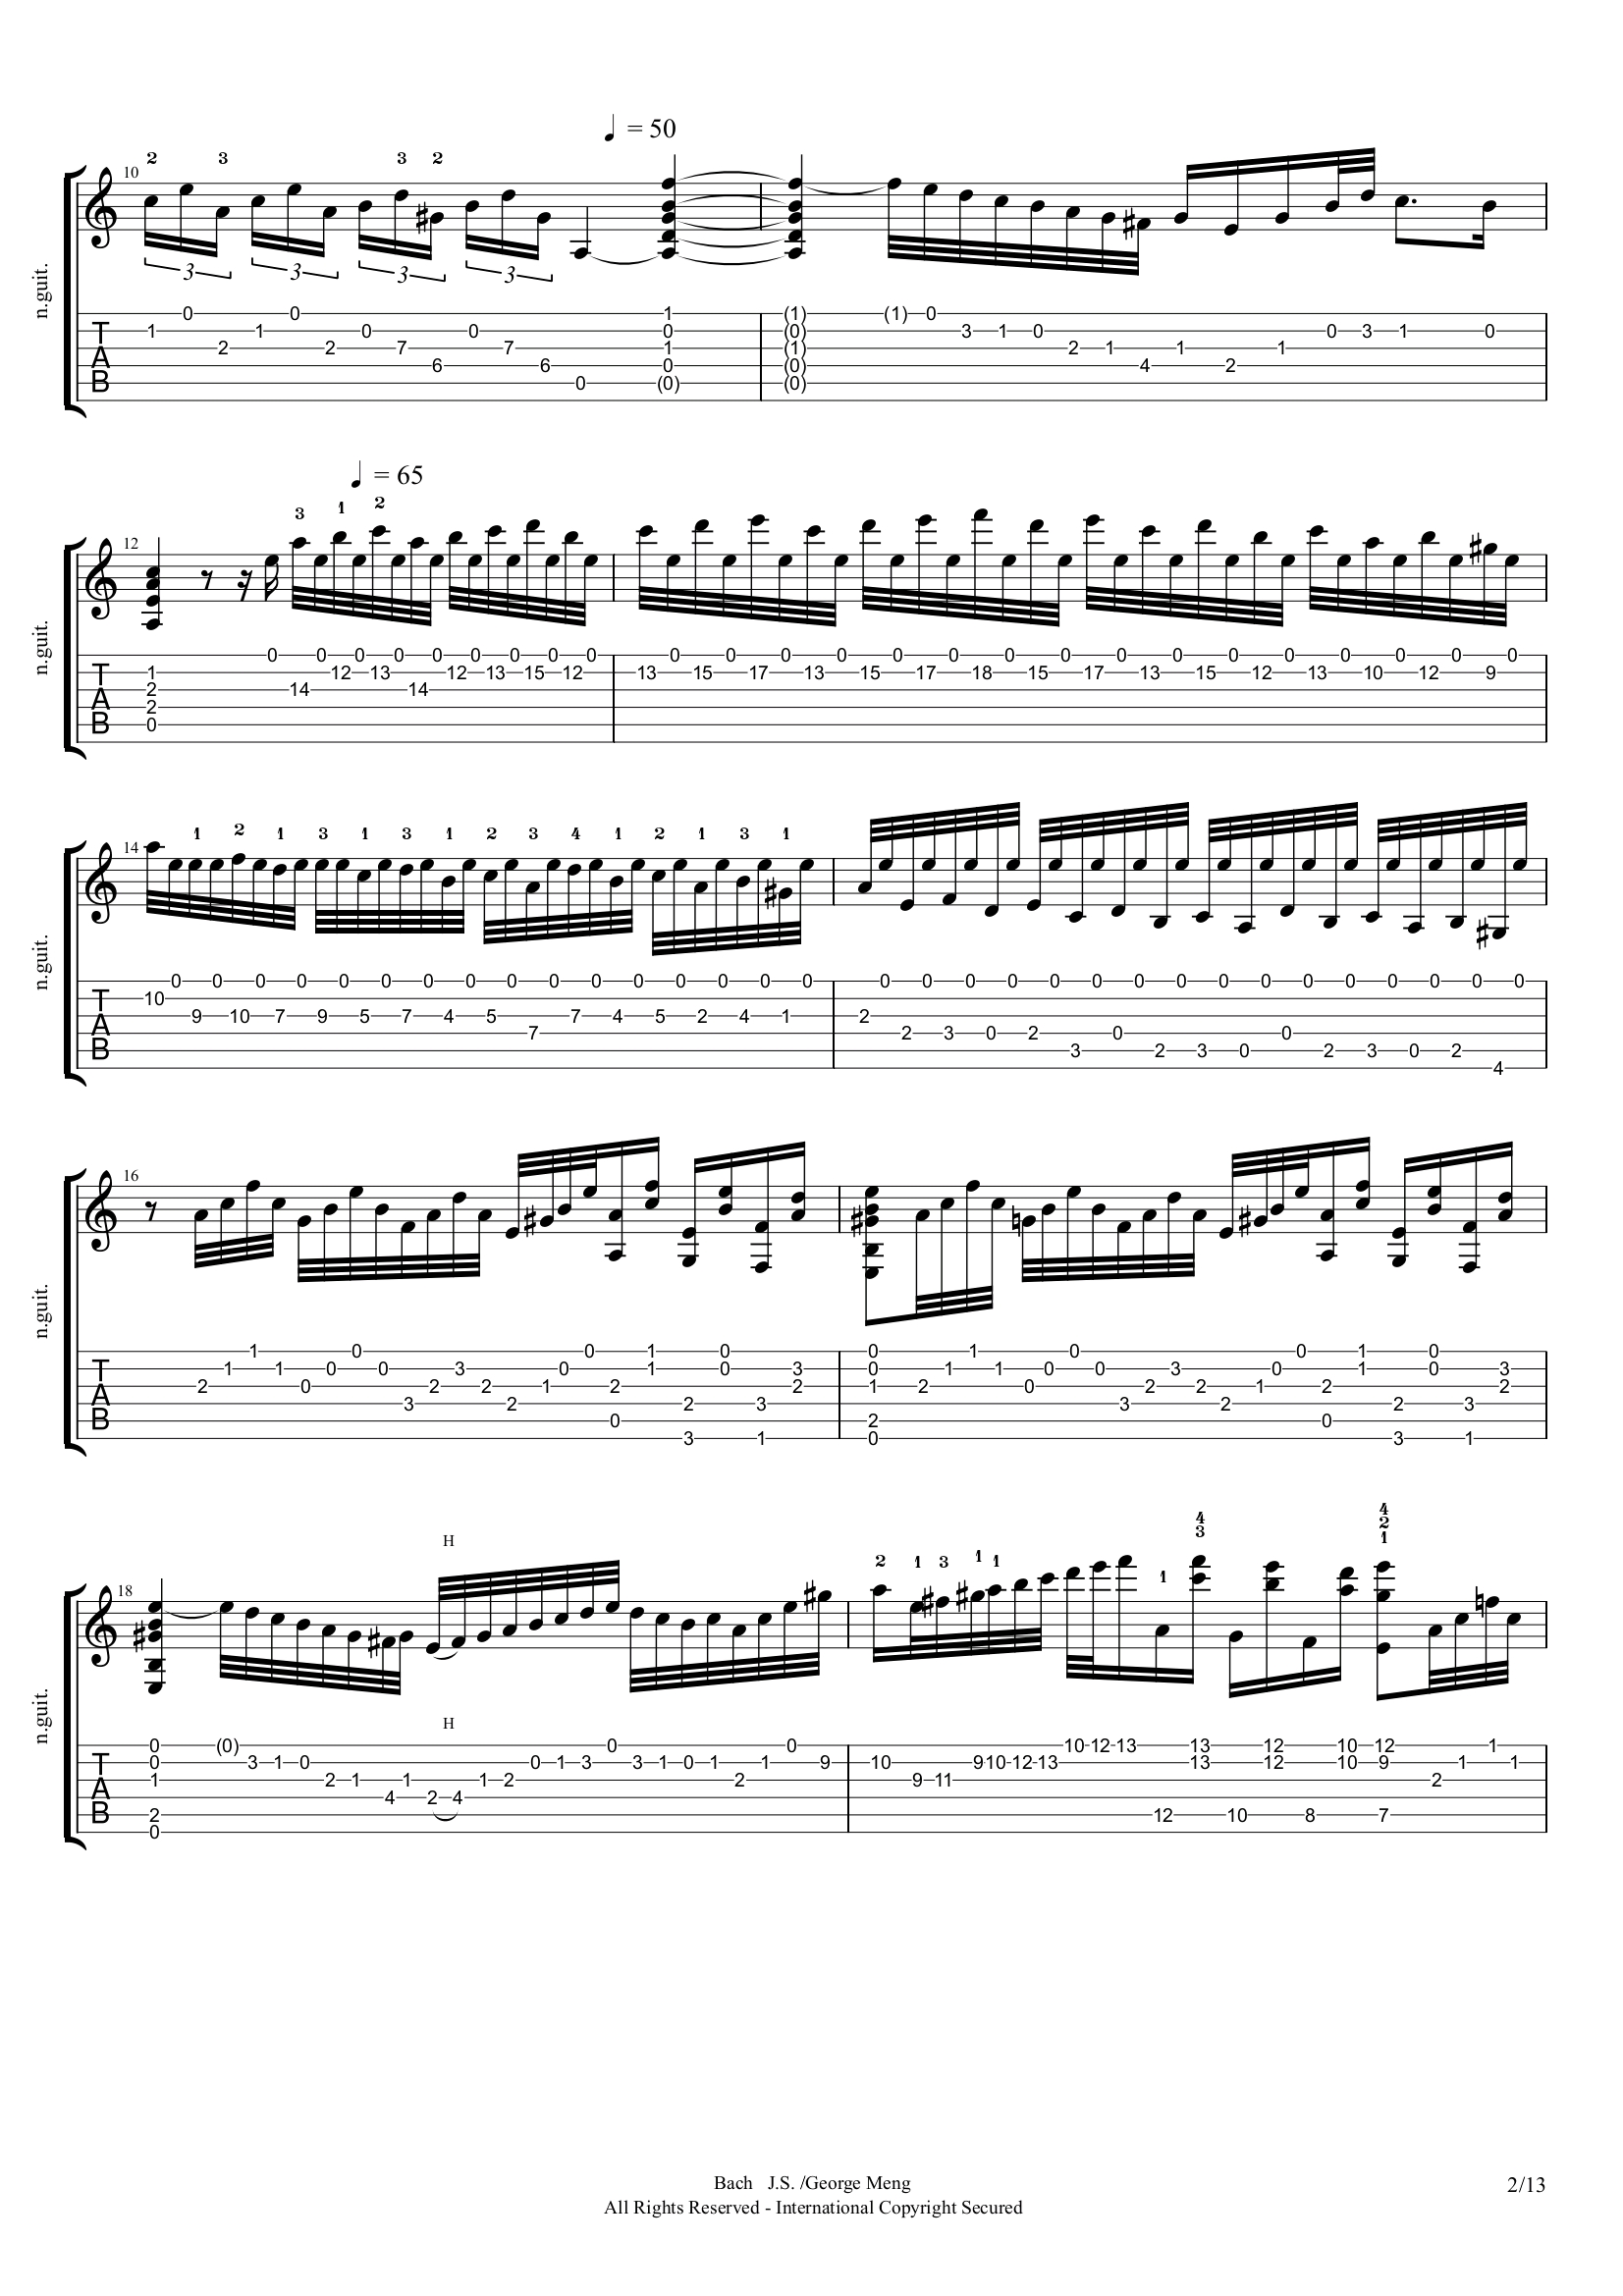 古典吉他曲谱《Etude in Minor》-古典吉他谱 - 乐器学习网